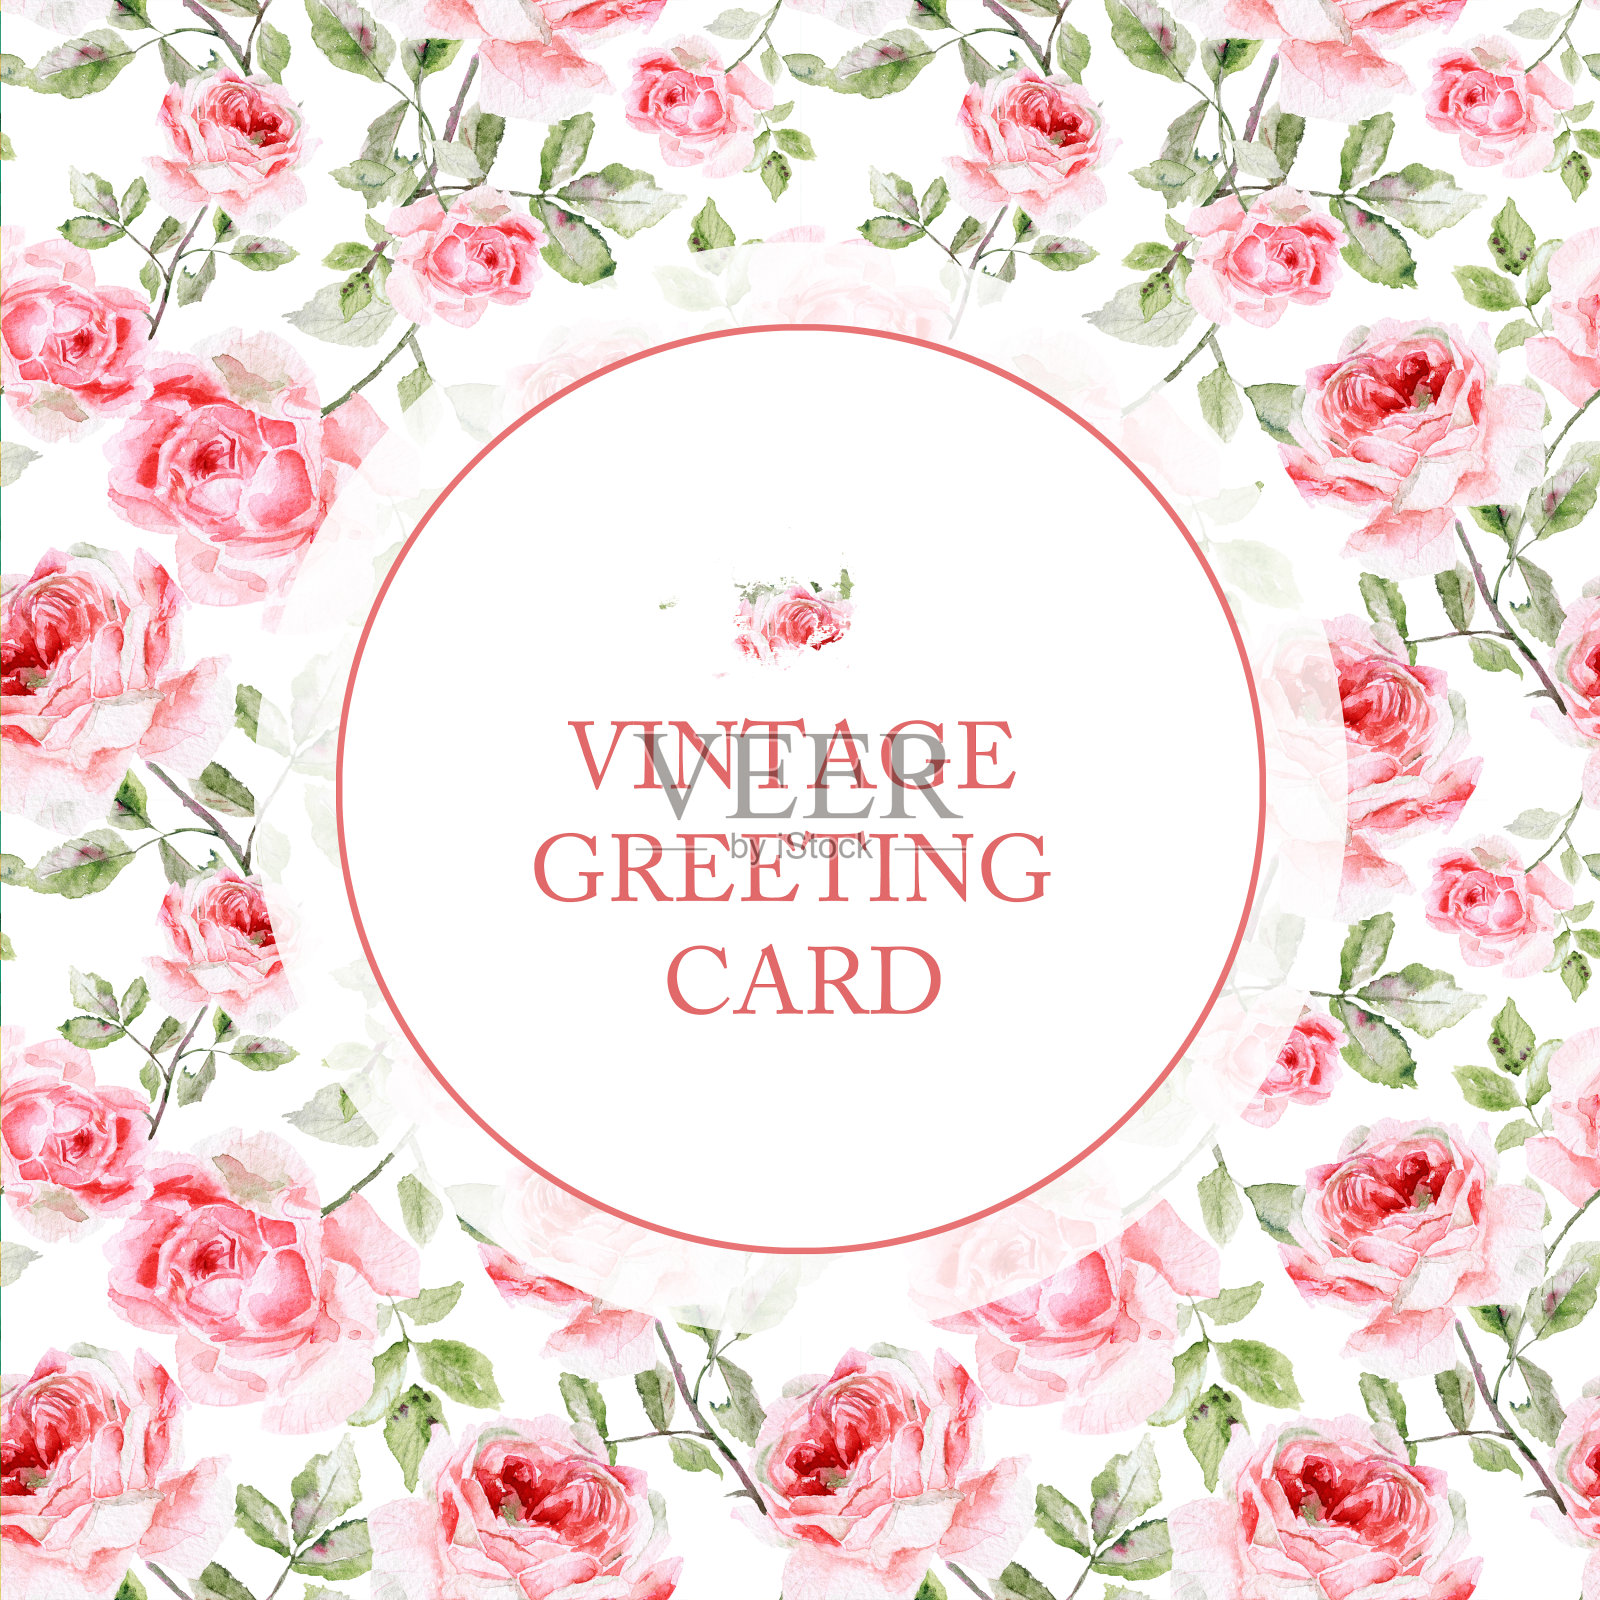 白色背景下粉红玫瑰的贺卡。设计模板素材